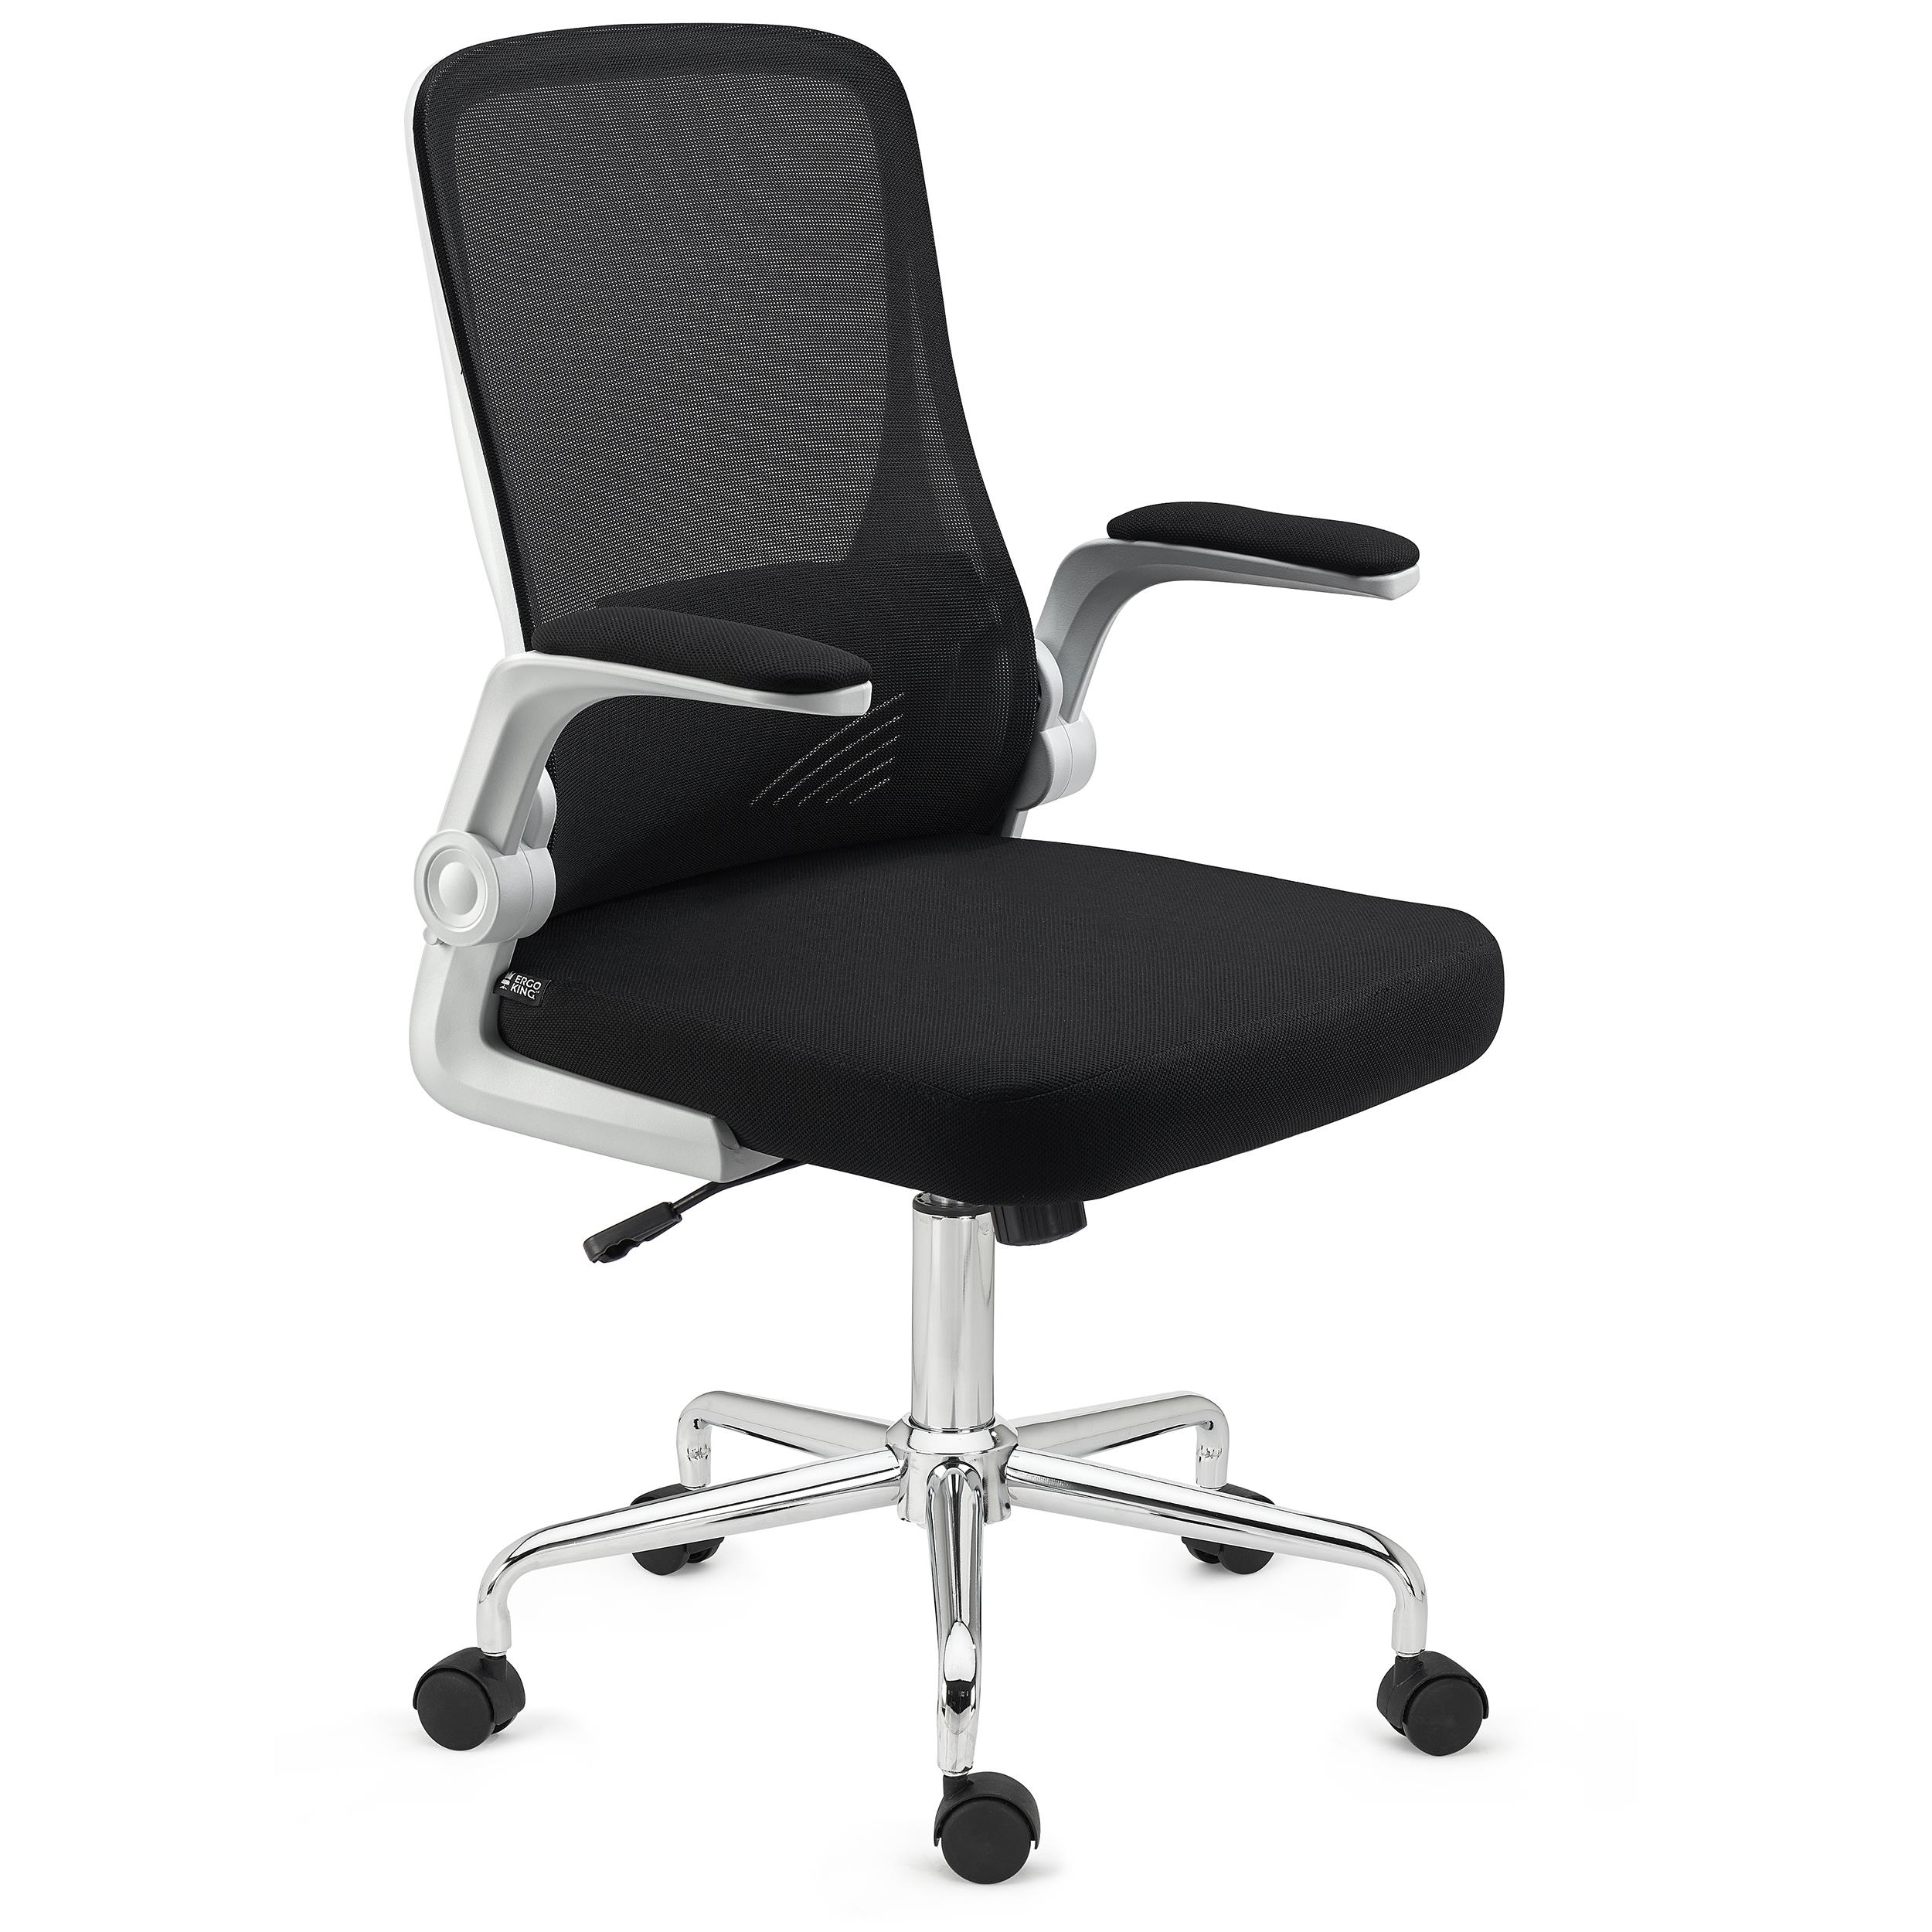 Ergonomischer Bürostuhl FOLD, klappbare Rückenlehne und Armlehnen, atmungsaktiver Netzstoff, Farbe Schwarz/ Weiß